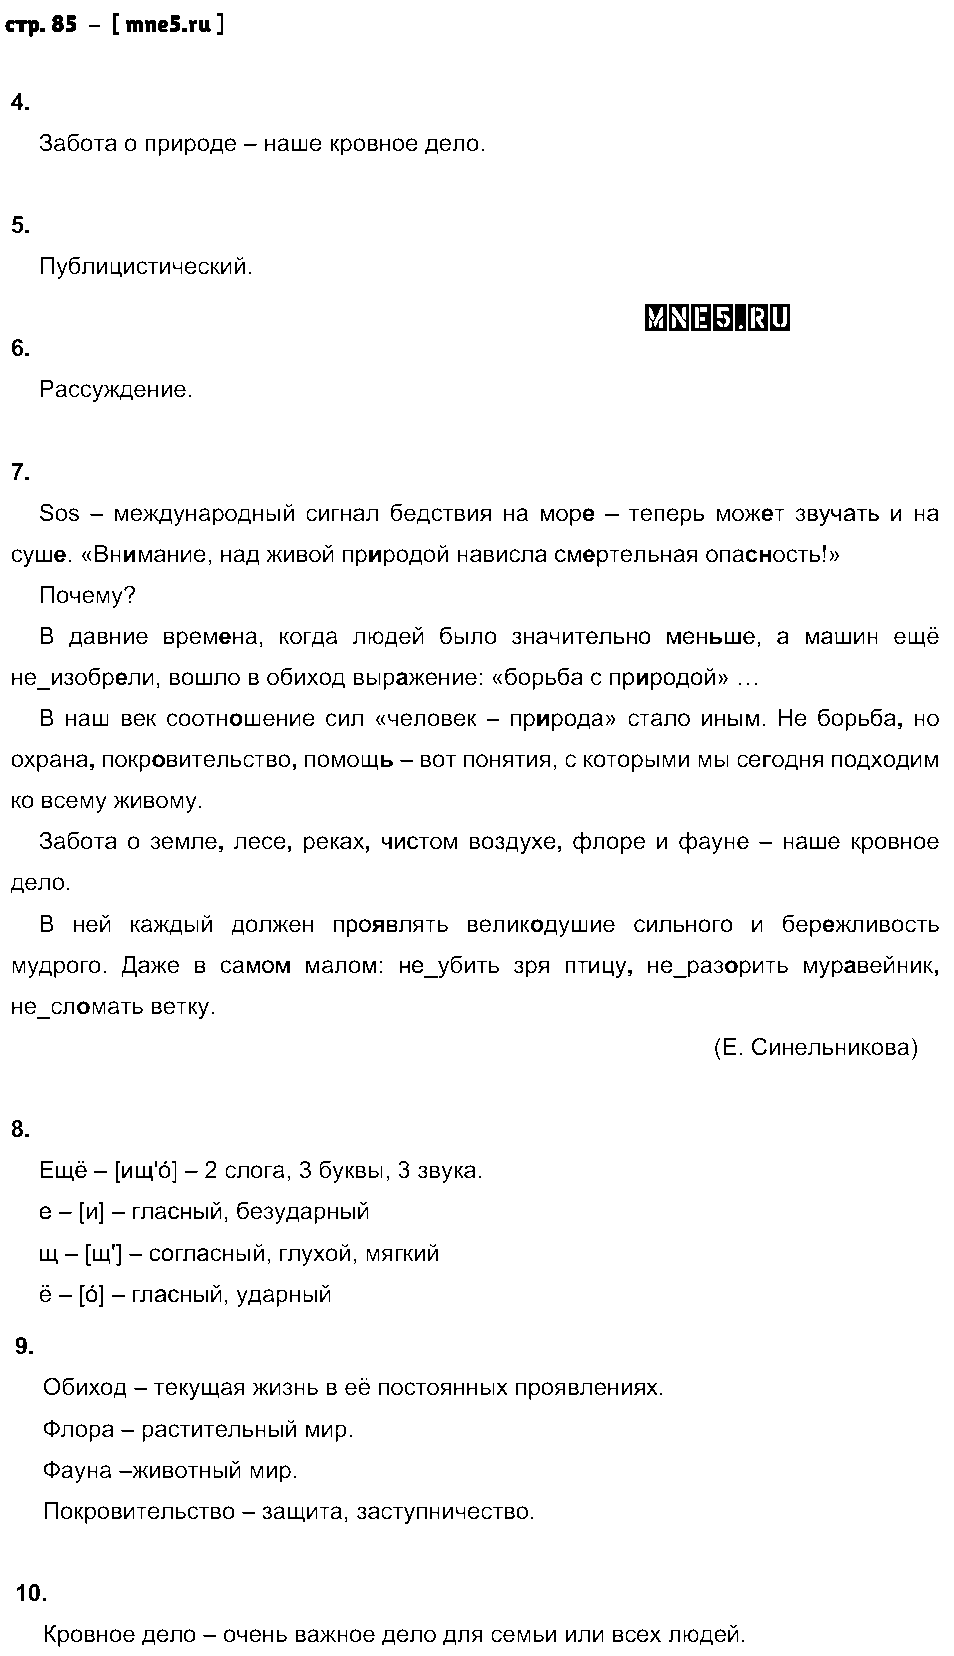 ГДЗ Русский язык 6 класс - стр. 85